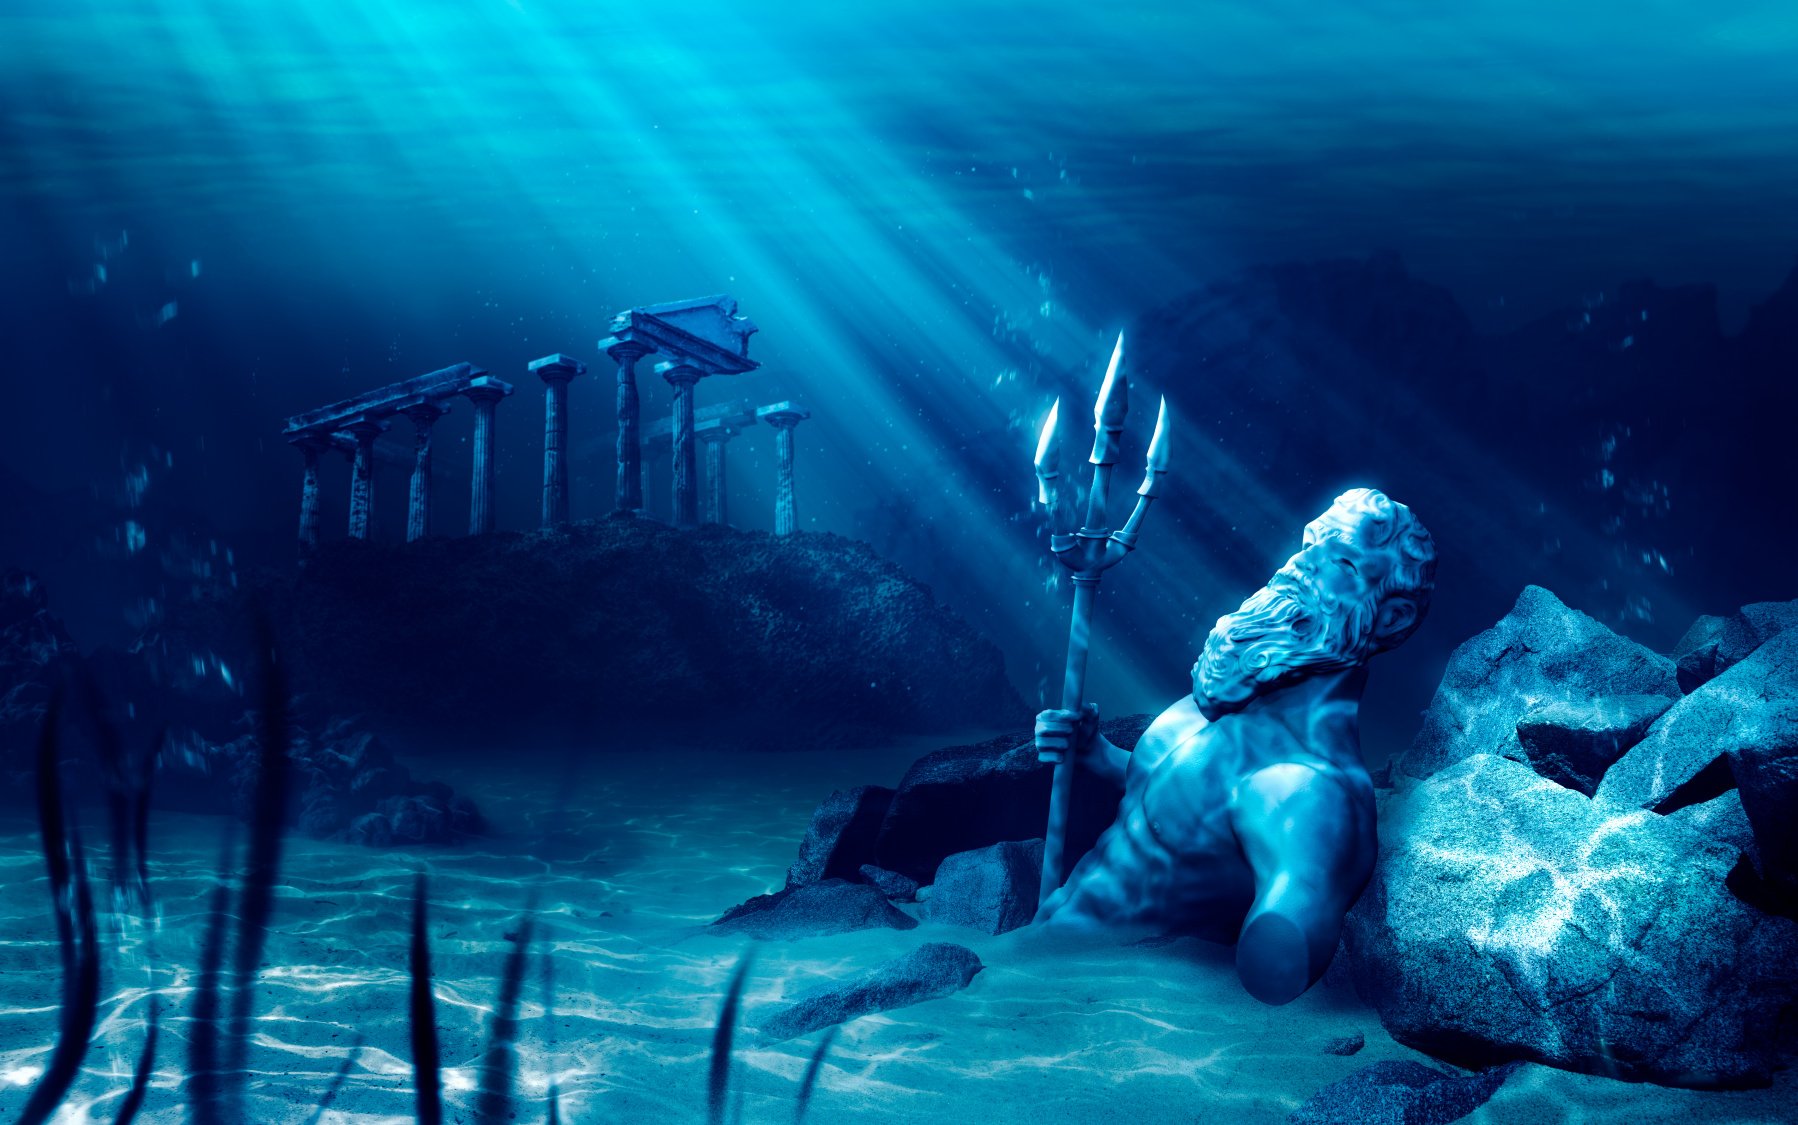 10 salapärast asukohta kadunud Atlantise linna leidmiseks 1